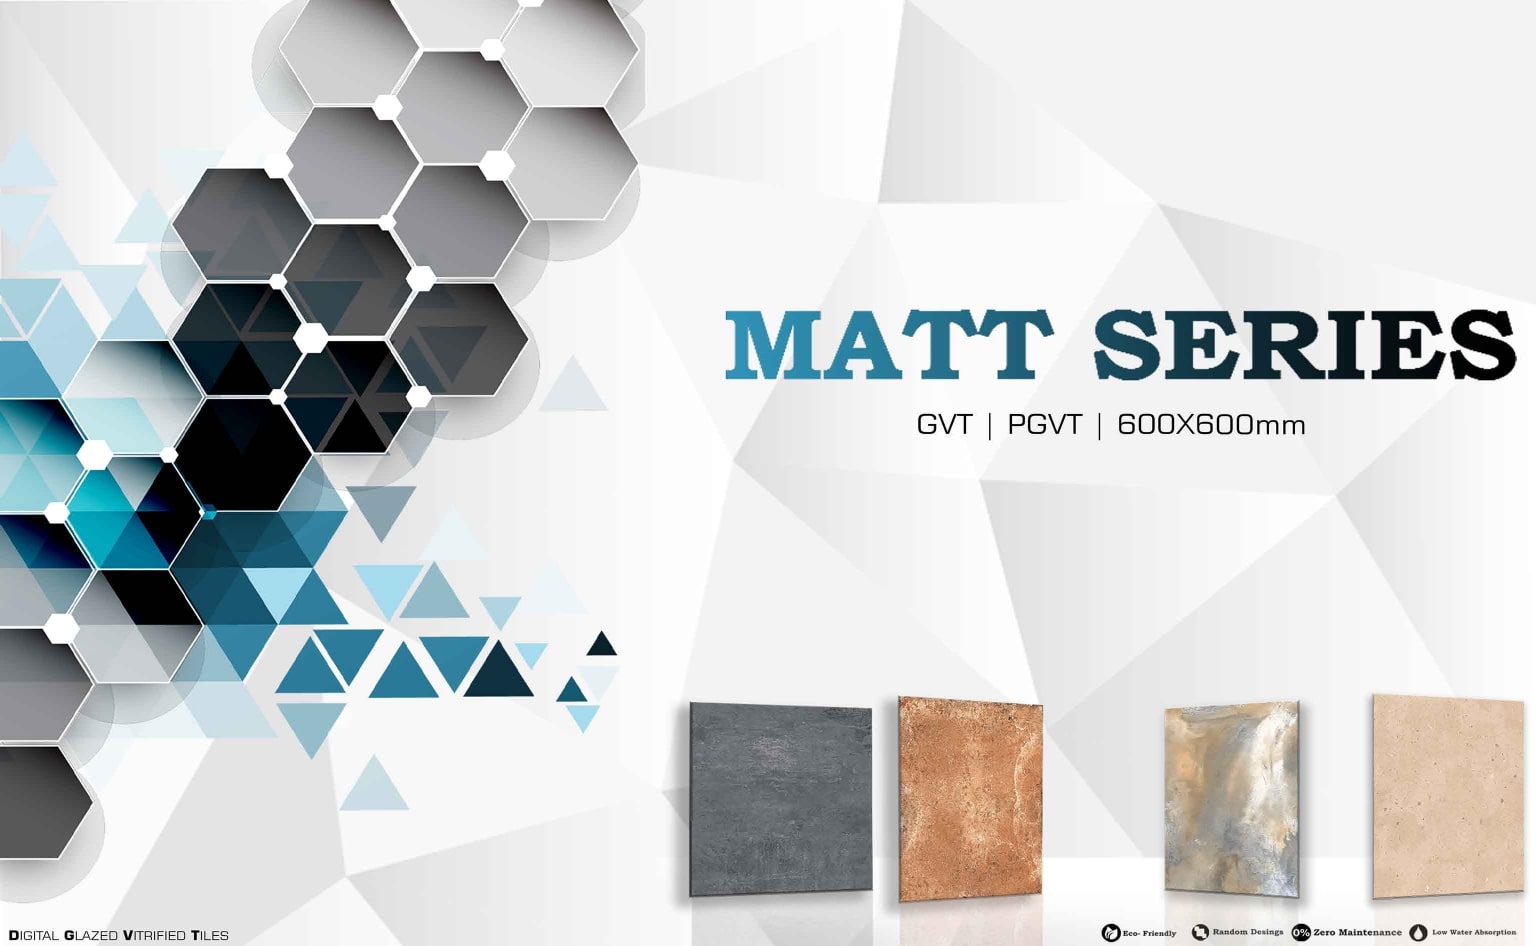 Matt -Serie catalogue